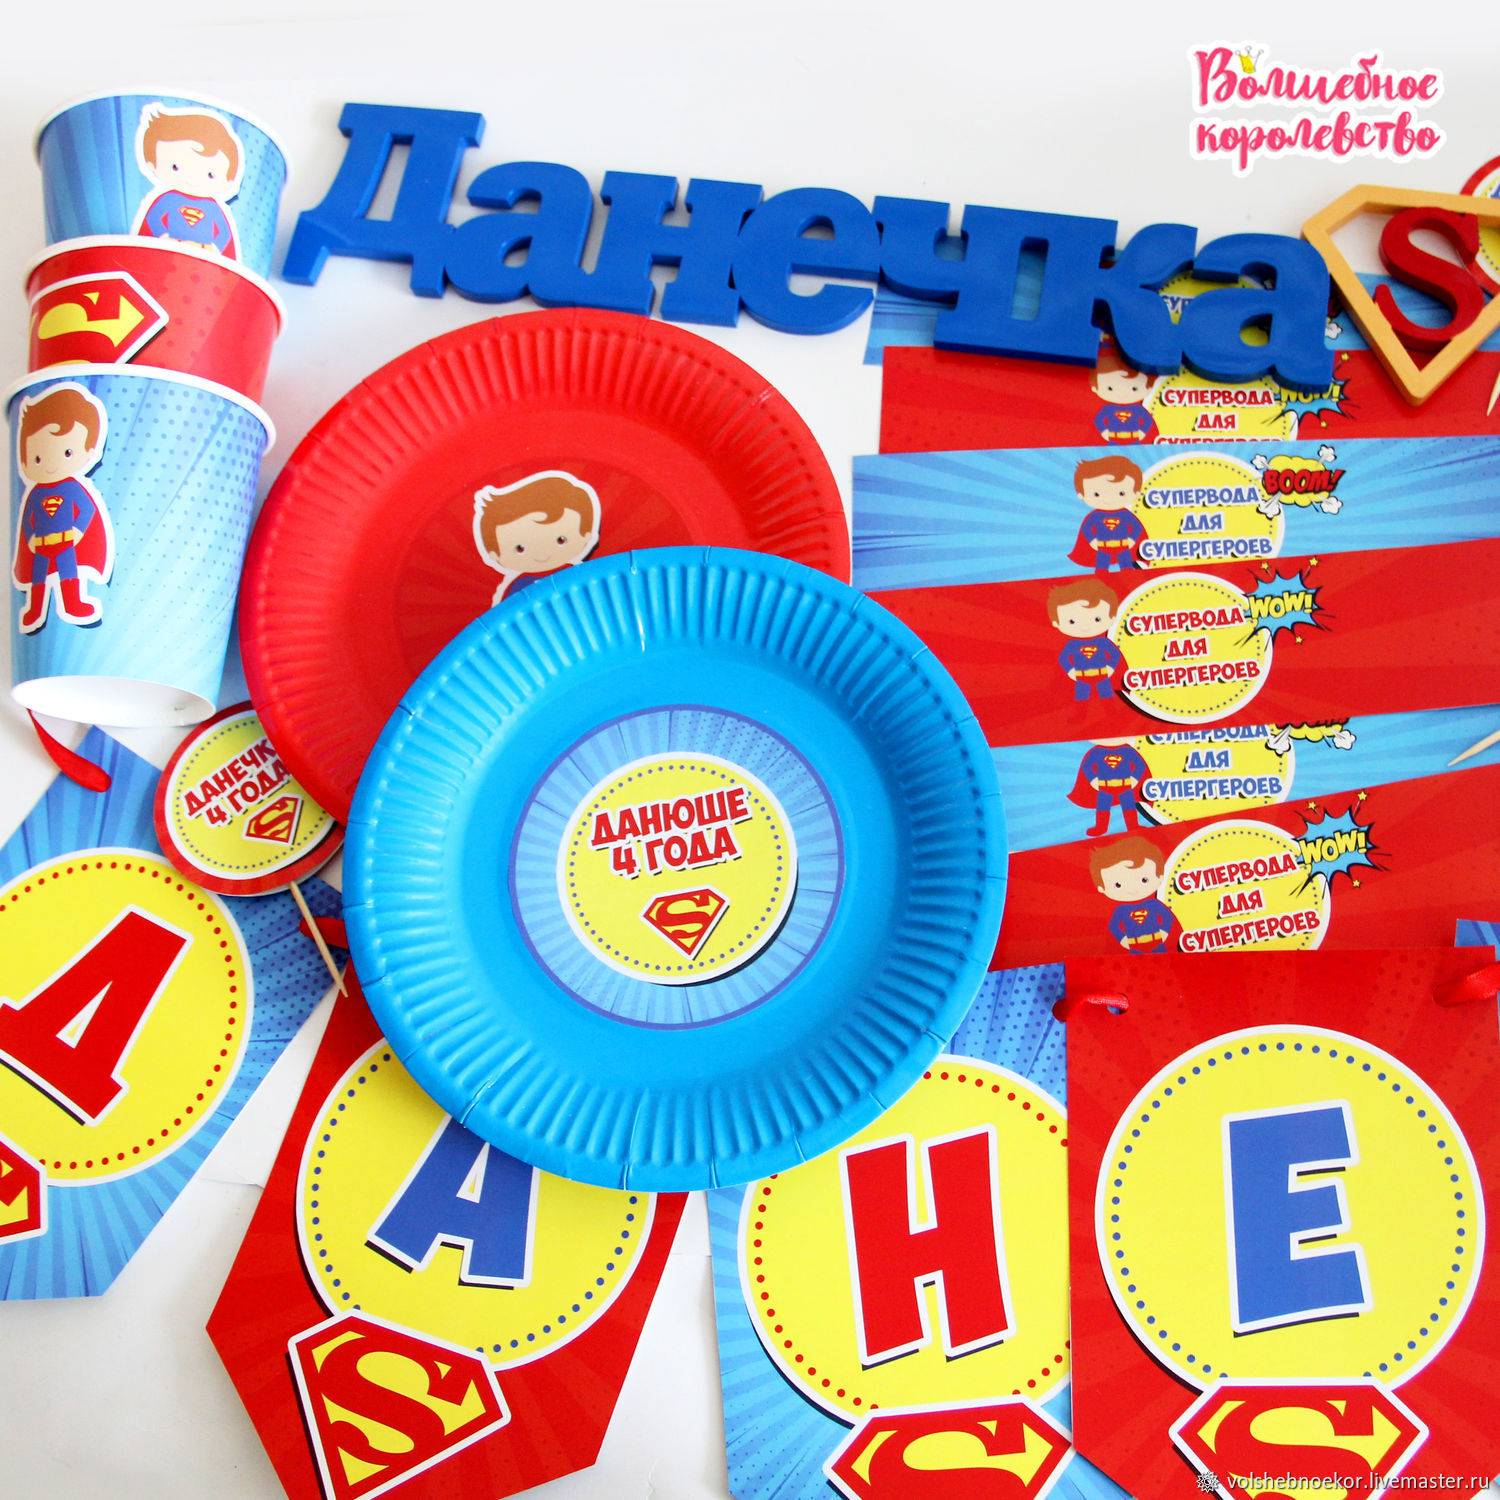 День рождения в стиле супергероев для всех. детский день рождения в стиле супергероев! разовая игровая программа